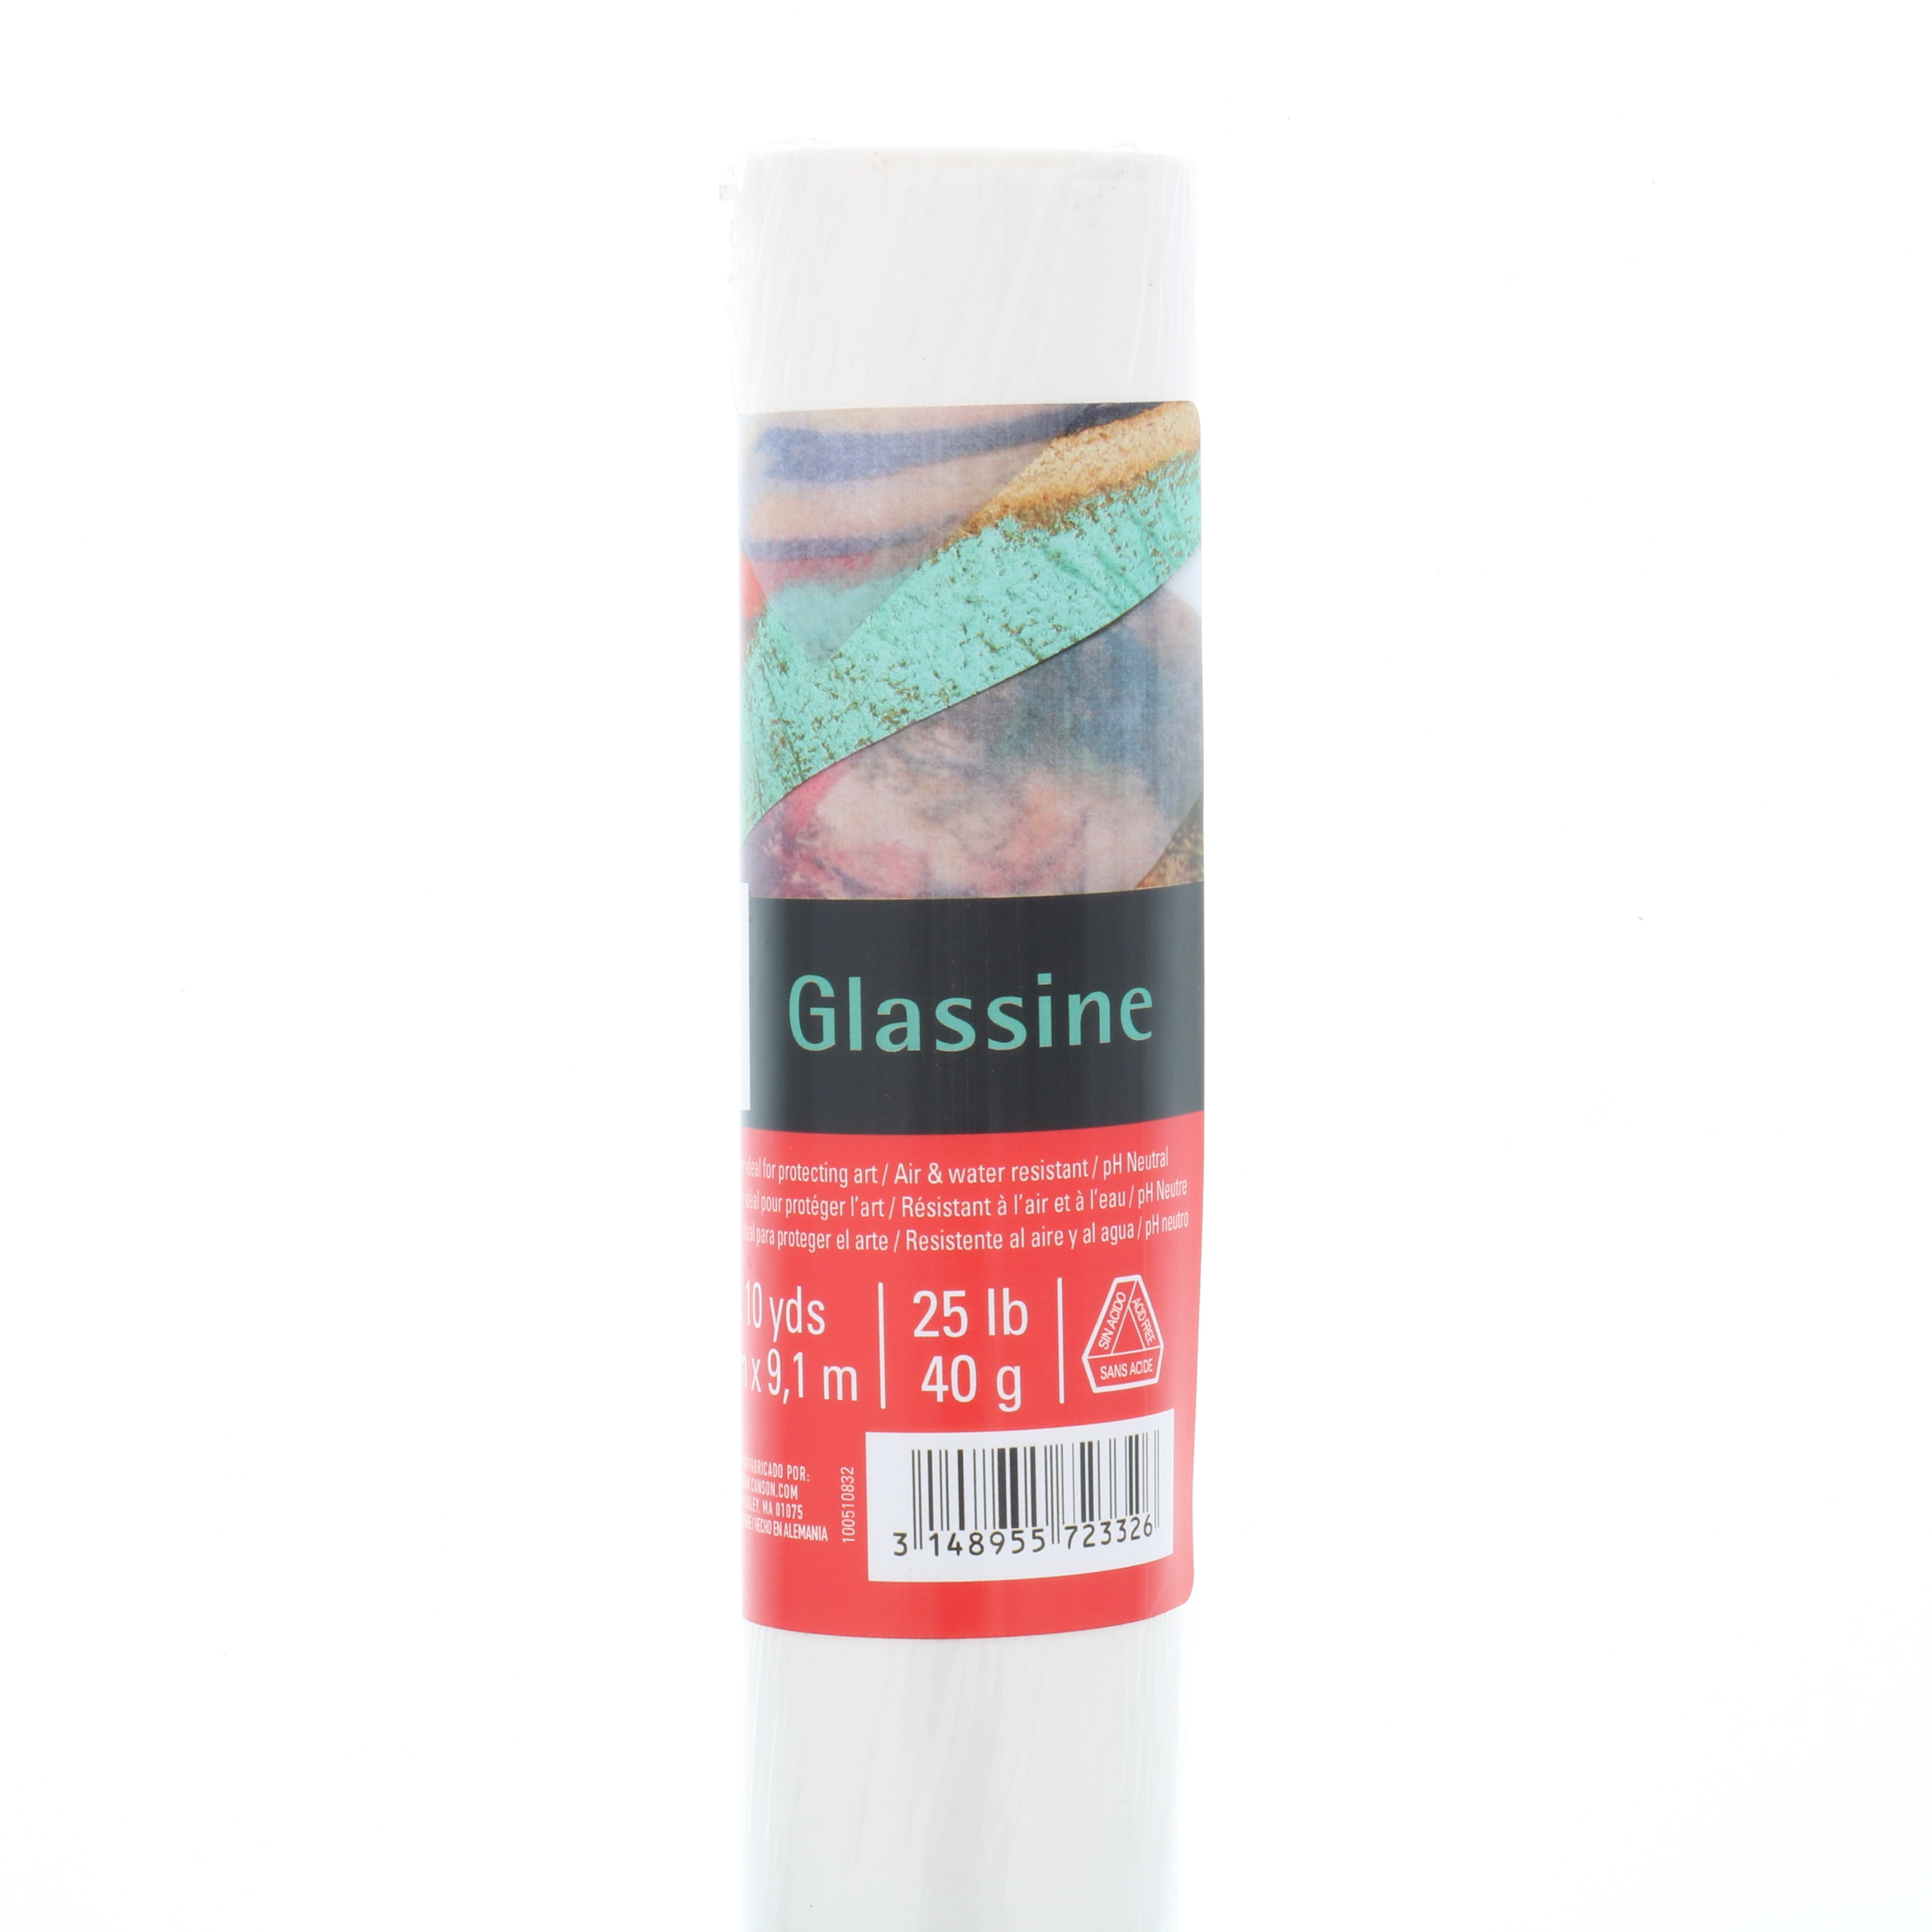 Glassine household roll